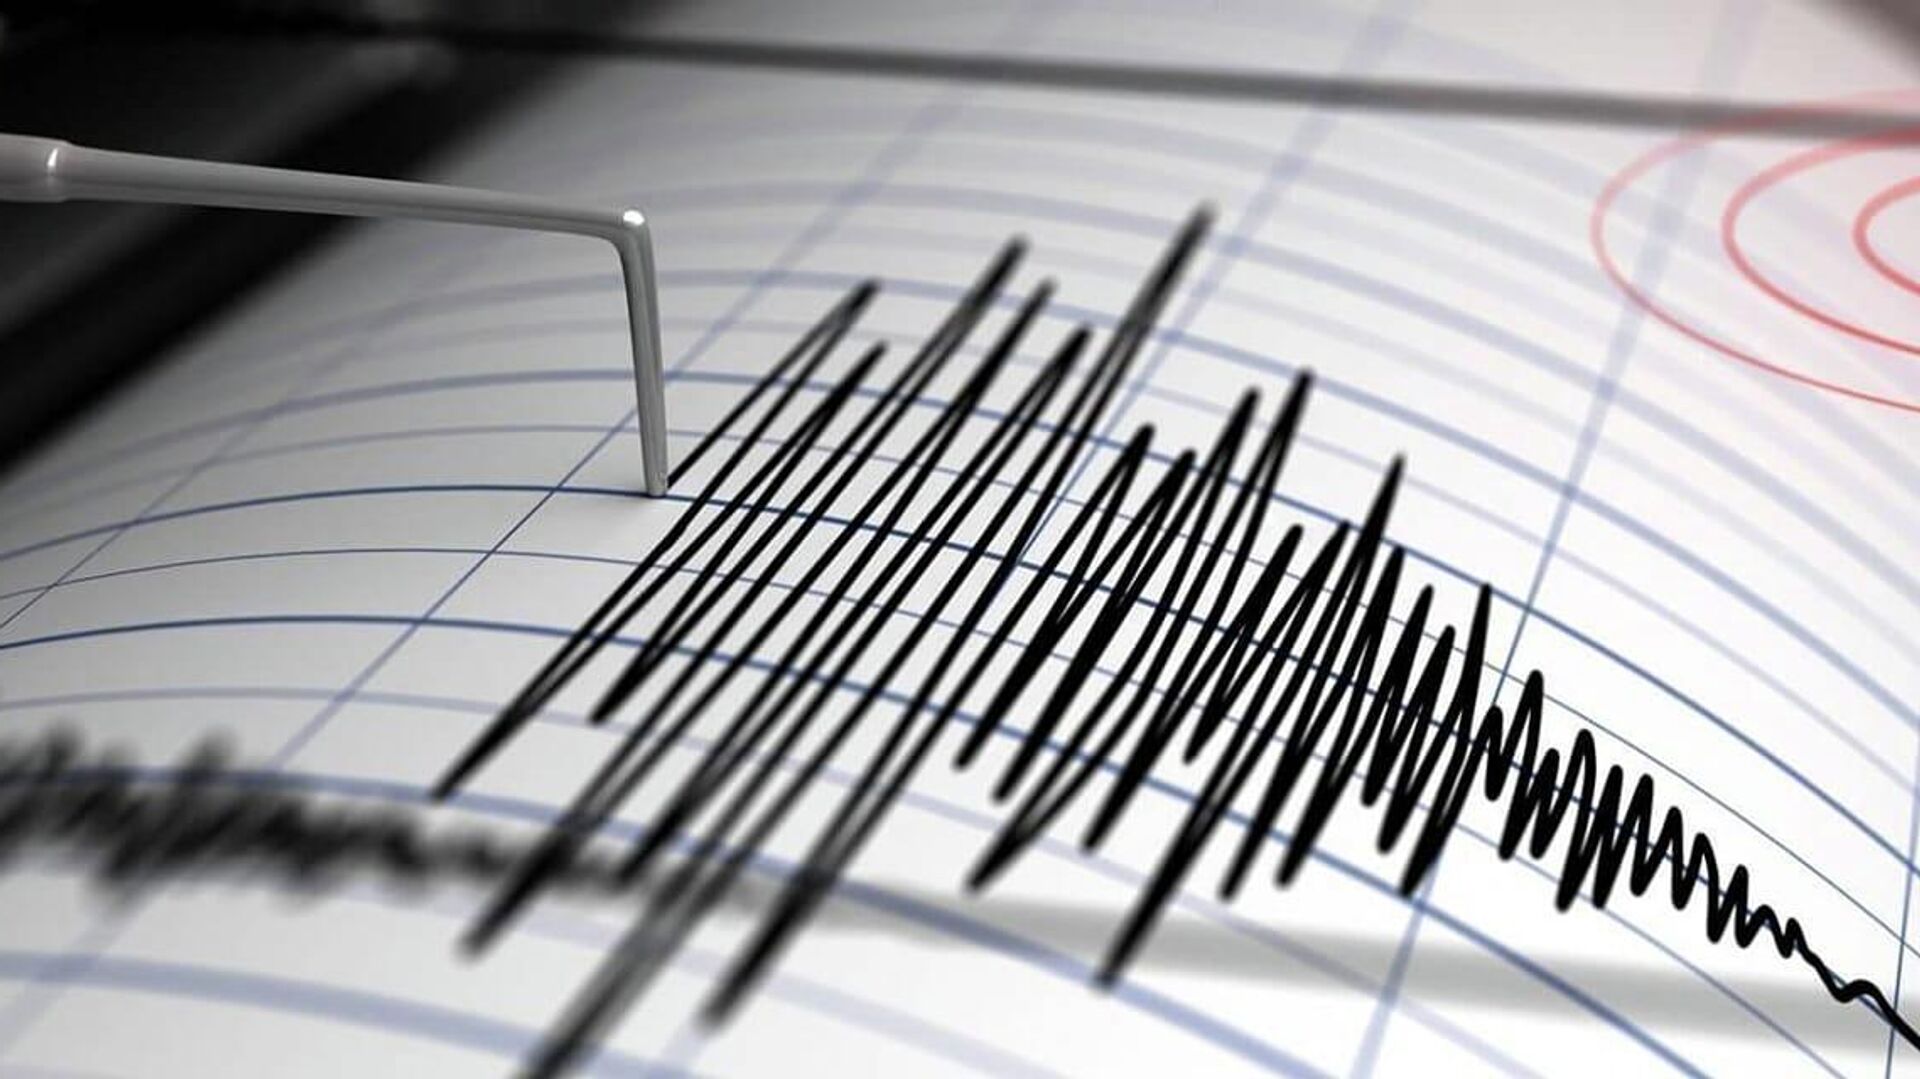 Երկրաշարժ Թուրքիայում. օջախը գտնվել է 7 կմ խորության վրա